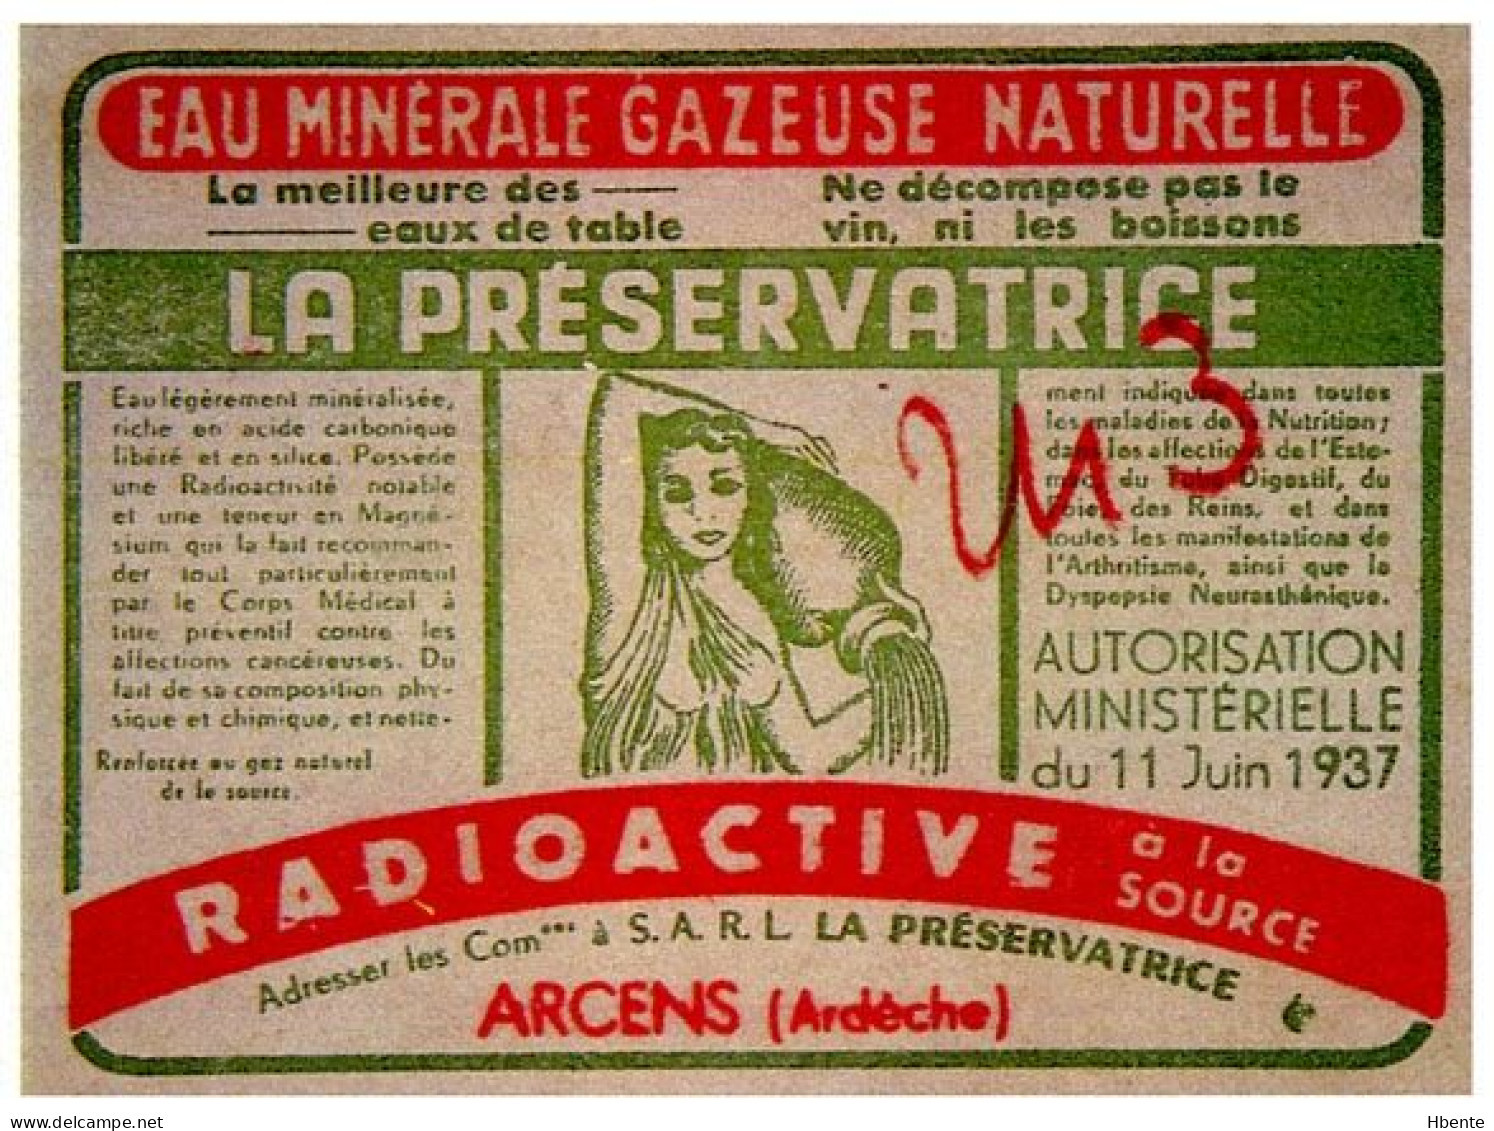 Eau Minérale Radioactive Source La Préservatrice Arcens Ardèche (Photo) - Objects